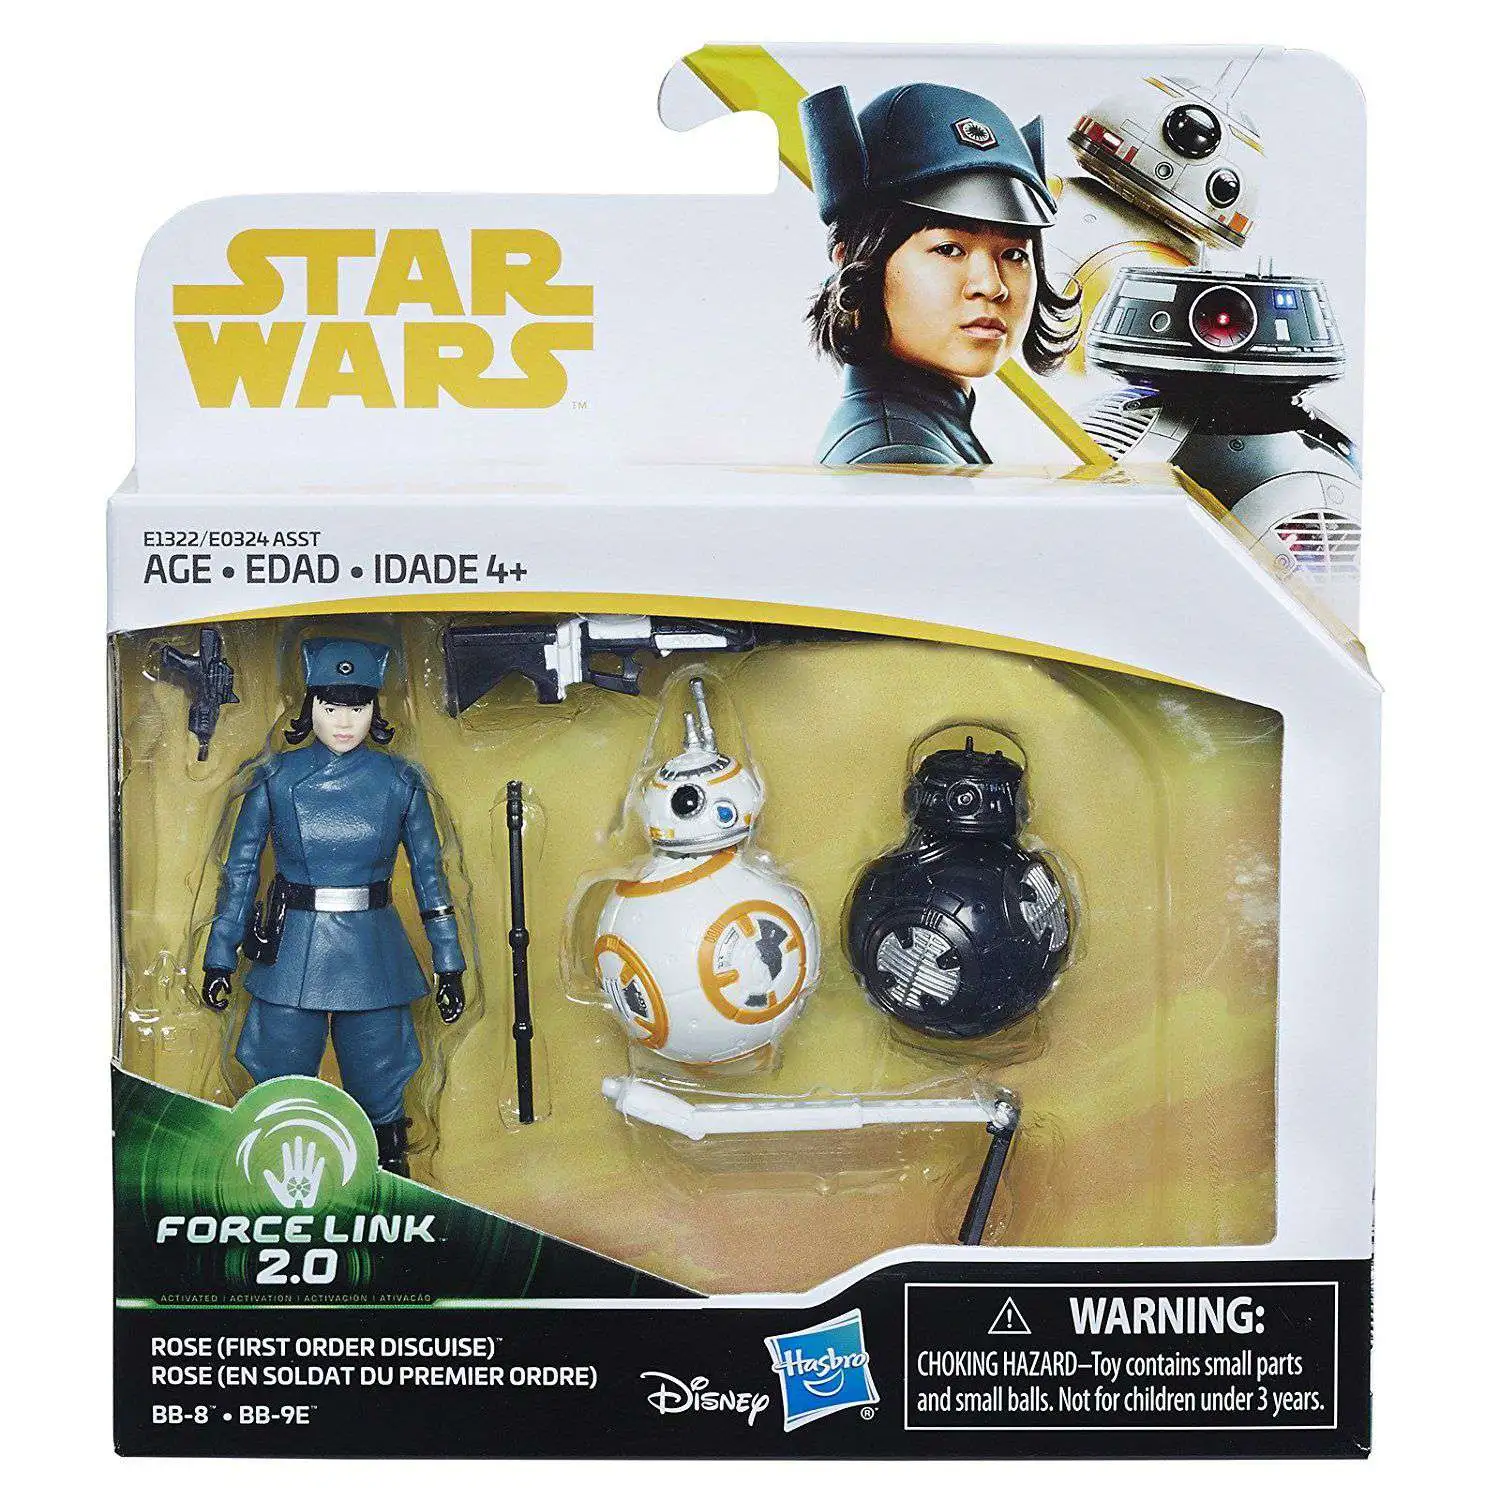 Hasbro Star Wars Force Link 2.0 Han Solo Landspeeder and Action Figure for sale online 